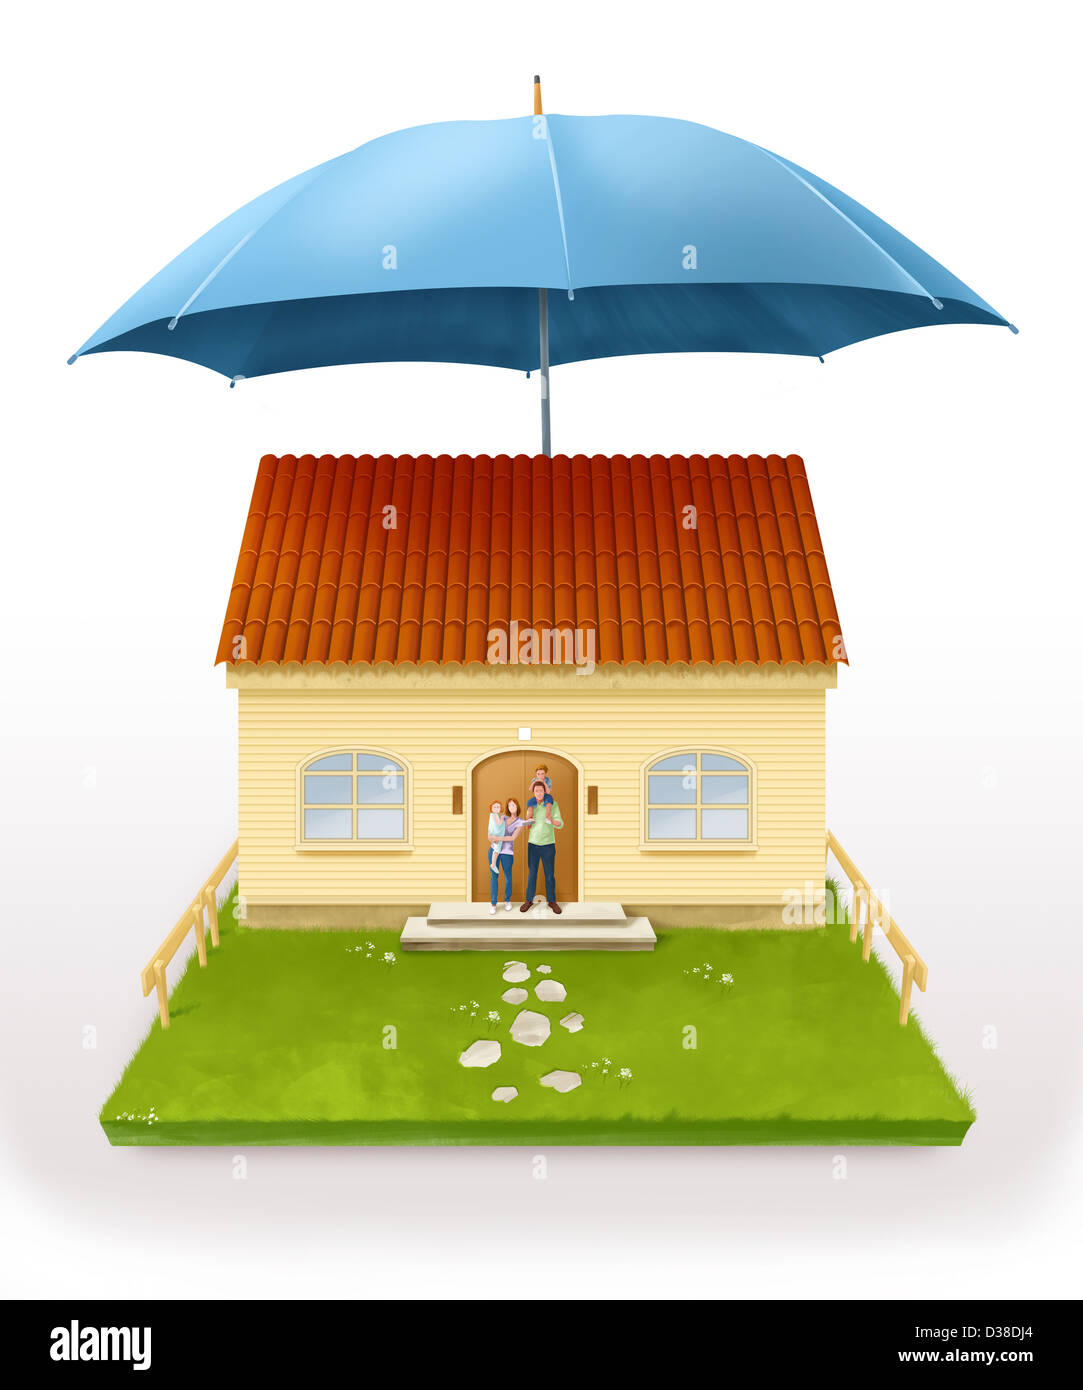 Image d'illustration d'un parasol au-dessus de chambre représentant l'assurance habitation Banque D'Images